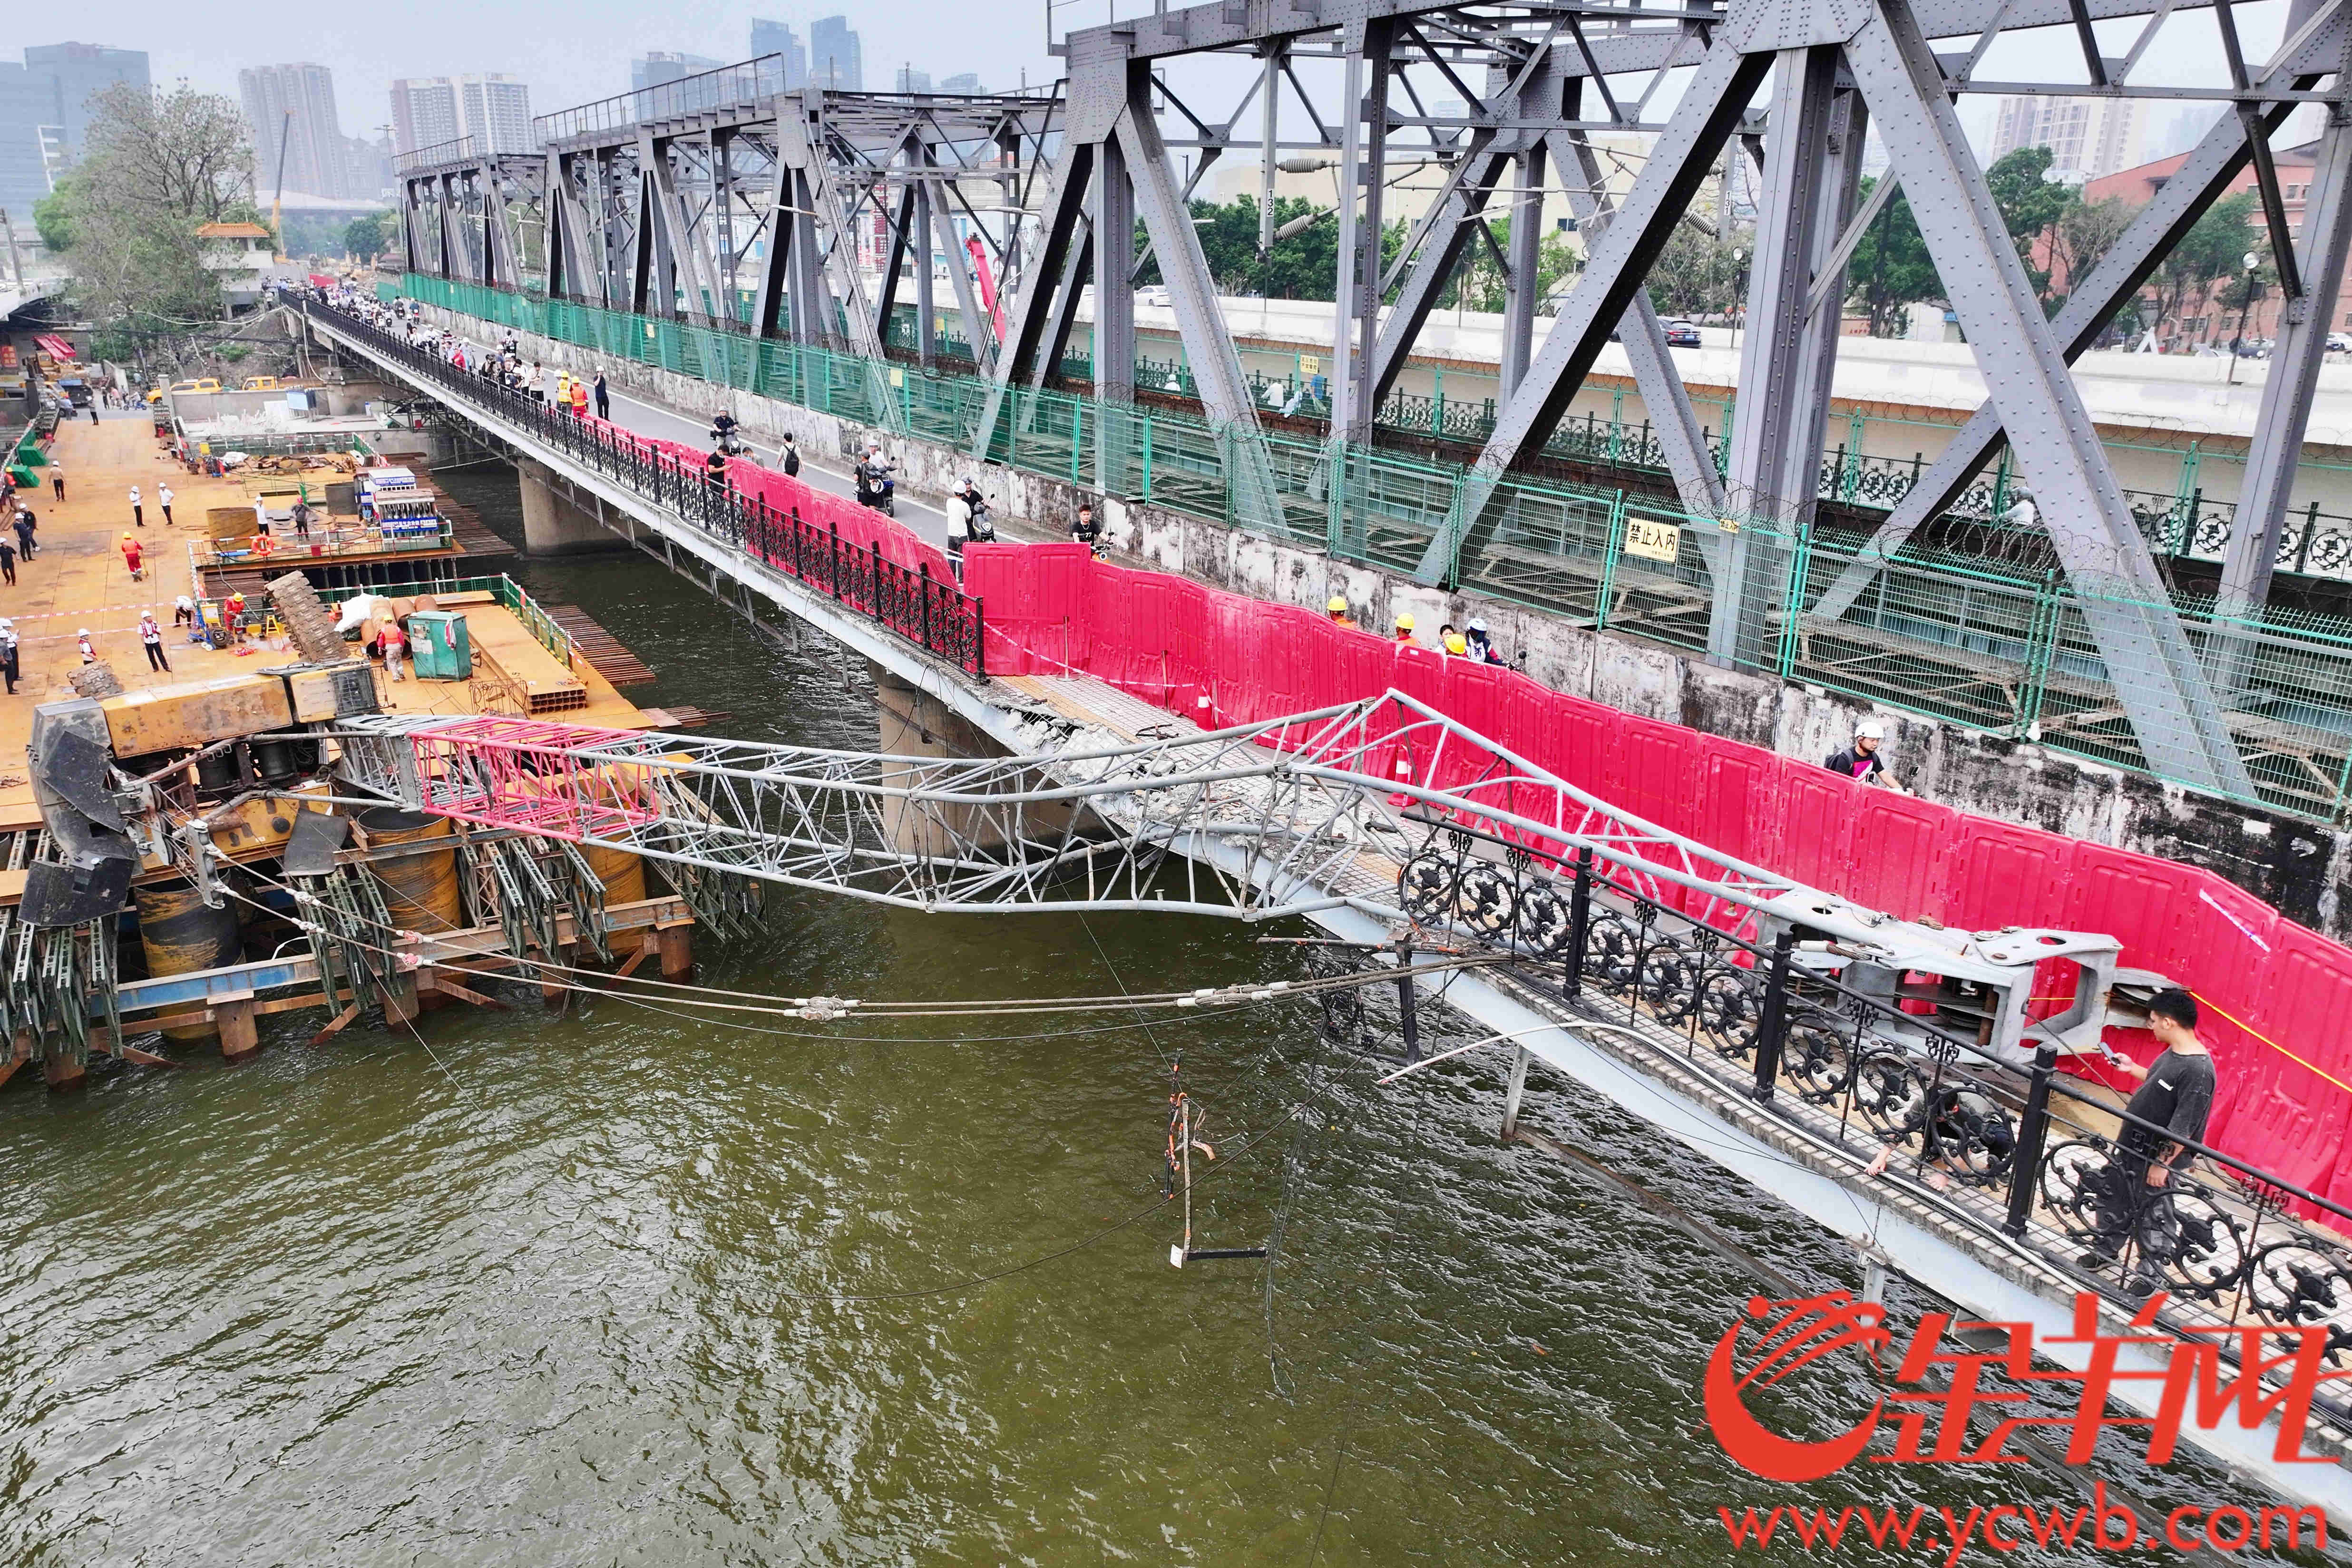 Bwin必赢广州珠江大桥吊机颠覆致局部桥体毁伤施工方称“司机